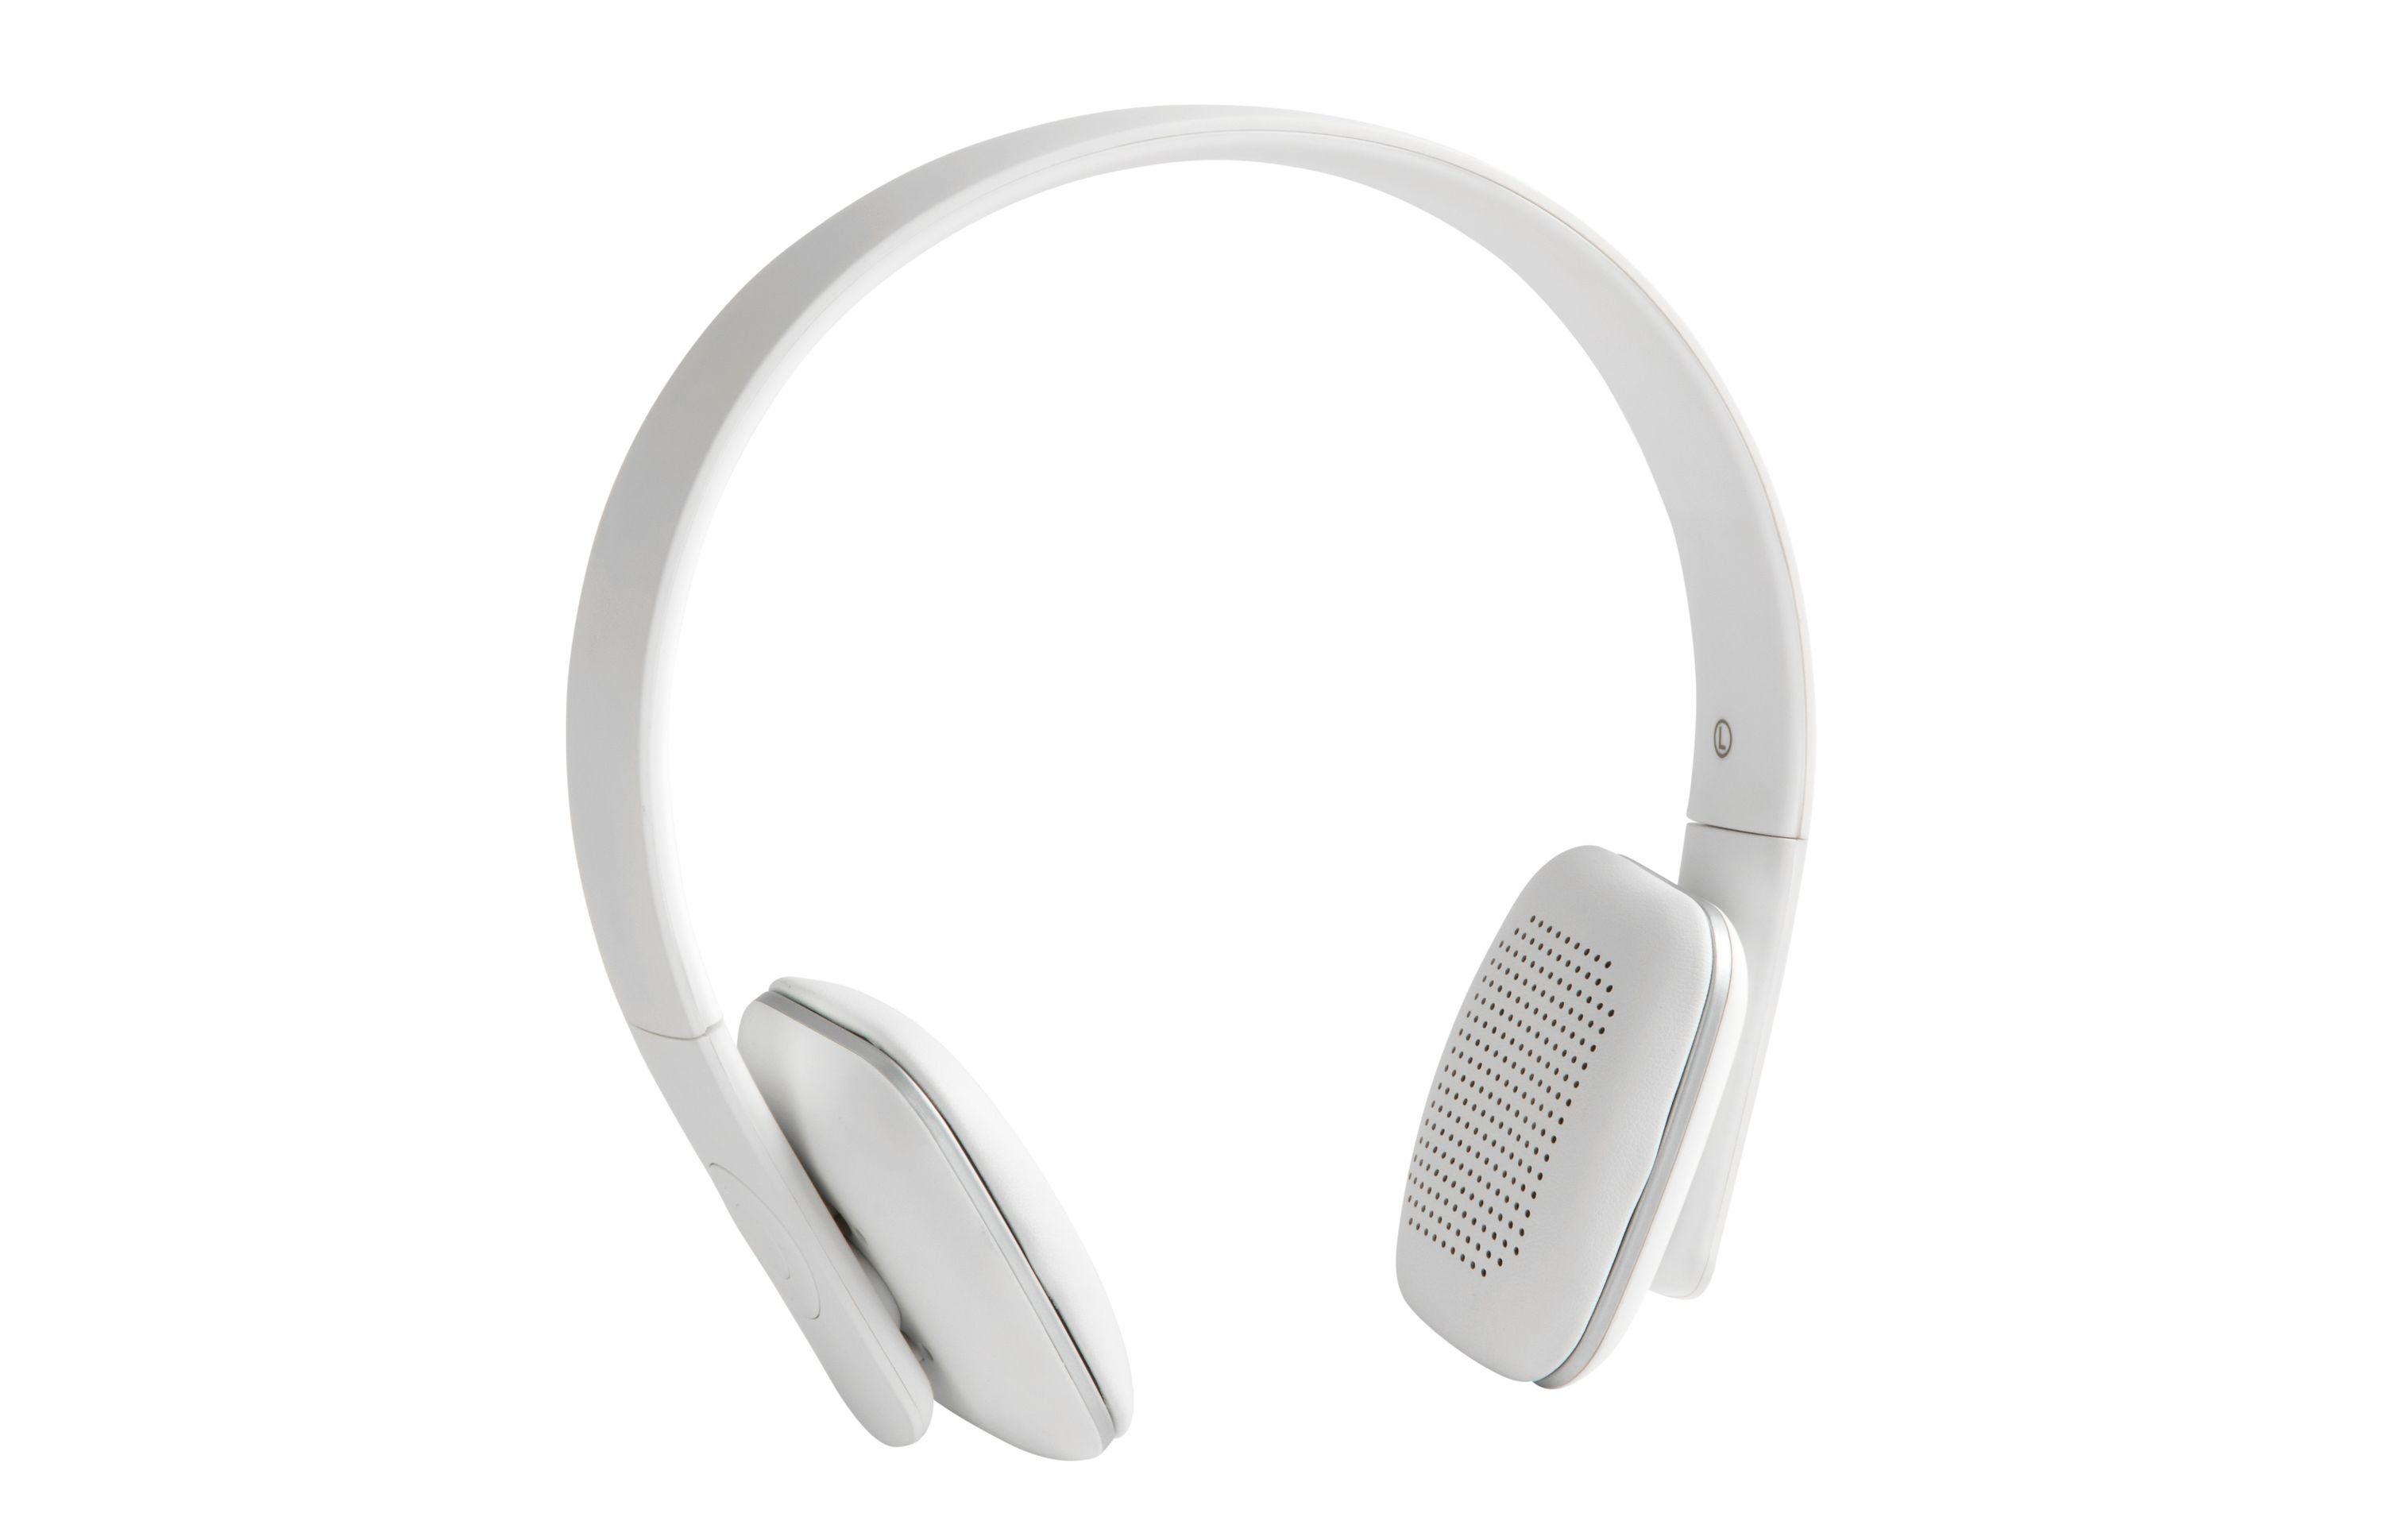 KREAFUNK On-Ear-Kopfhörer (aHEAD Bluetooth Kopfhörer) Plum